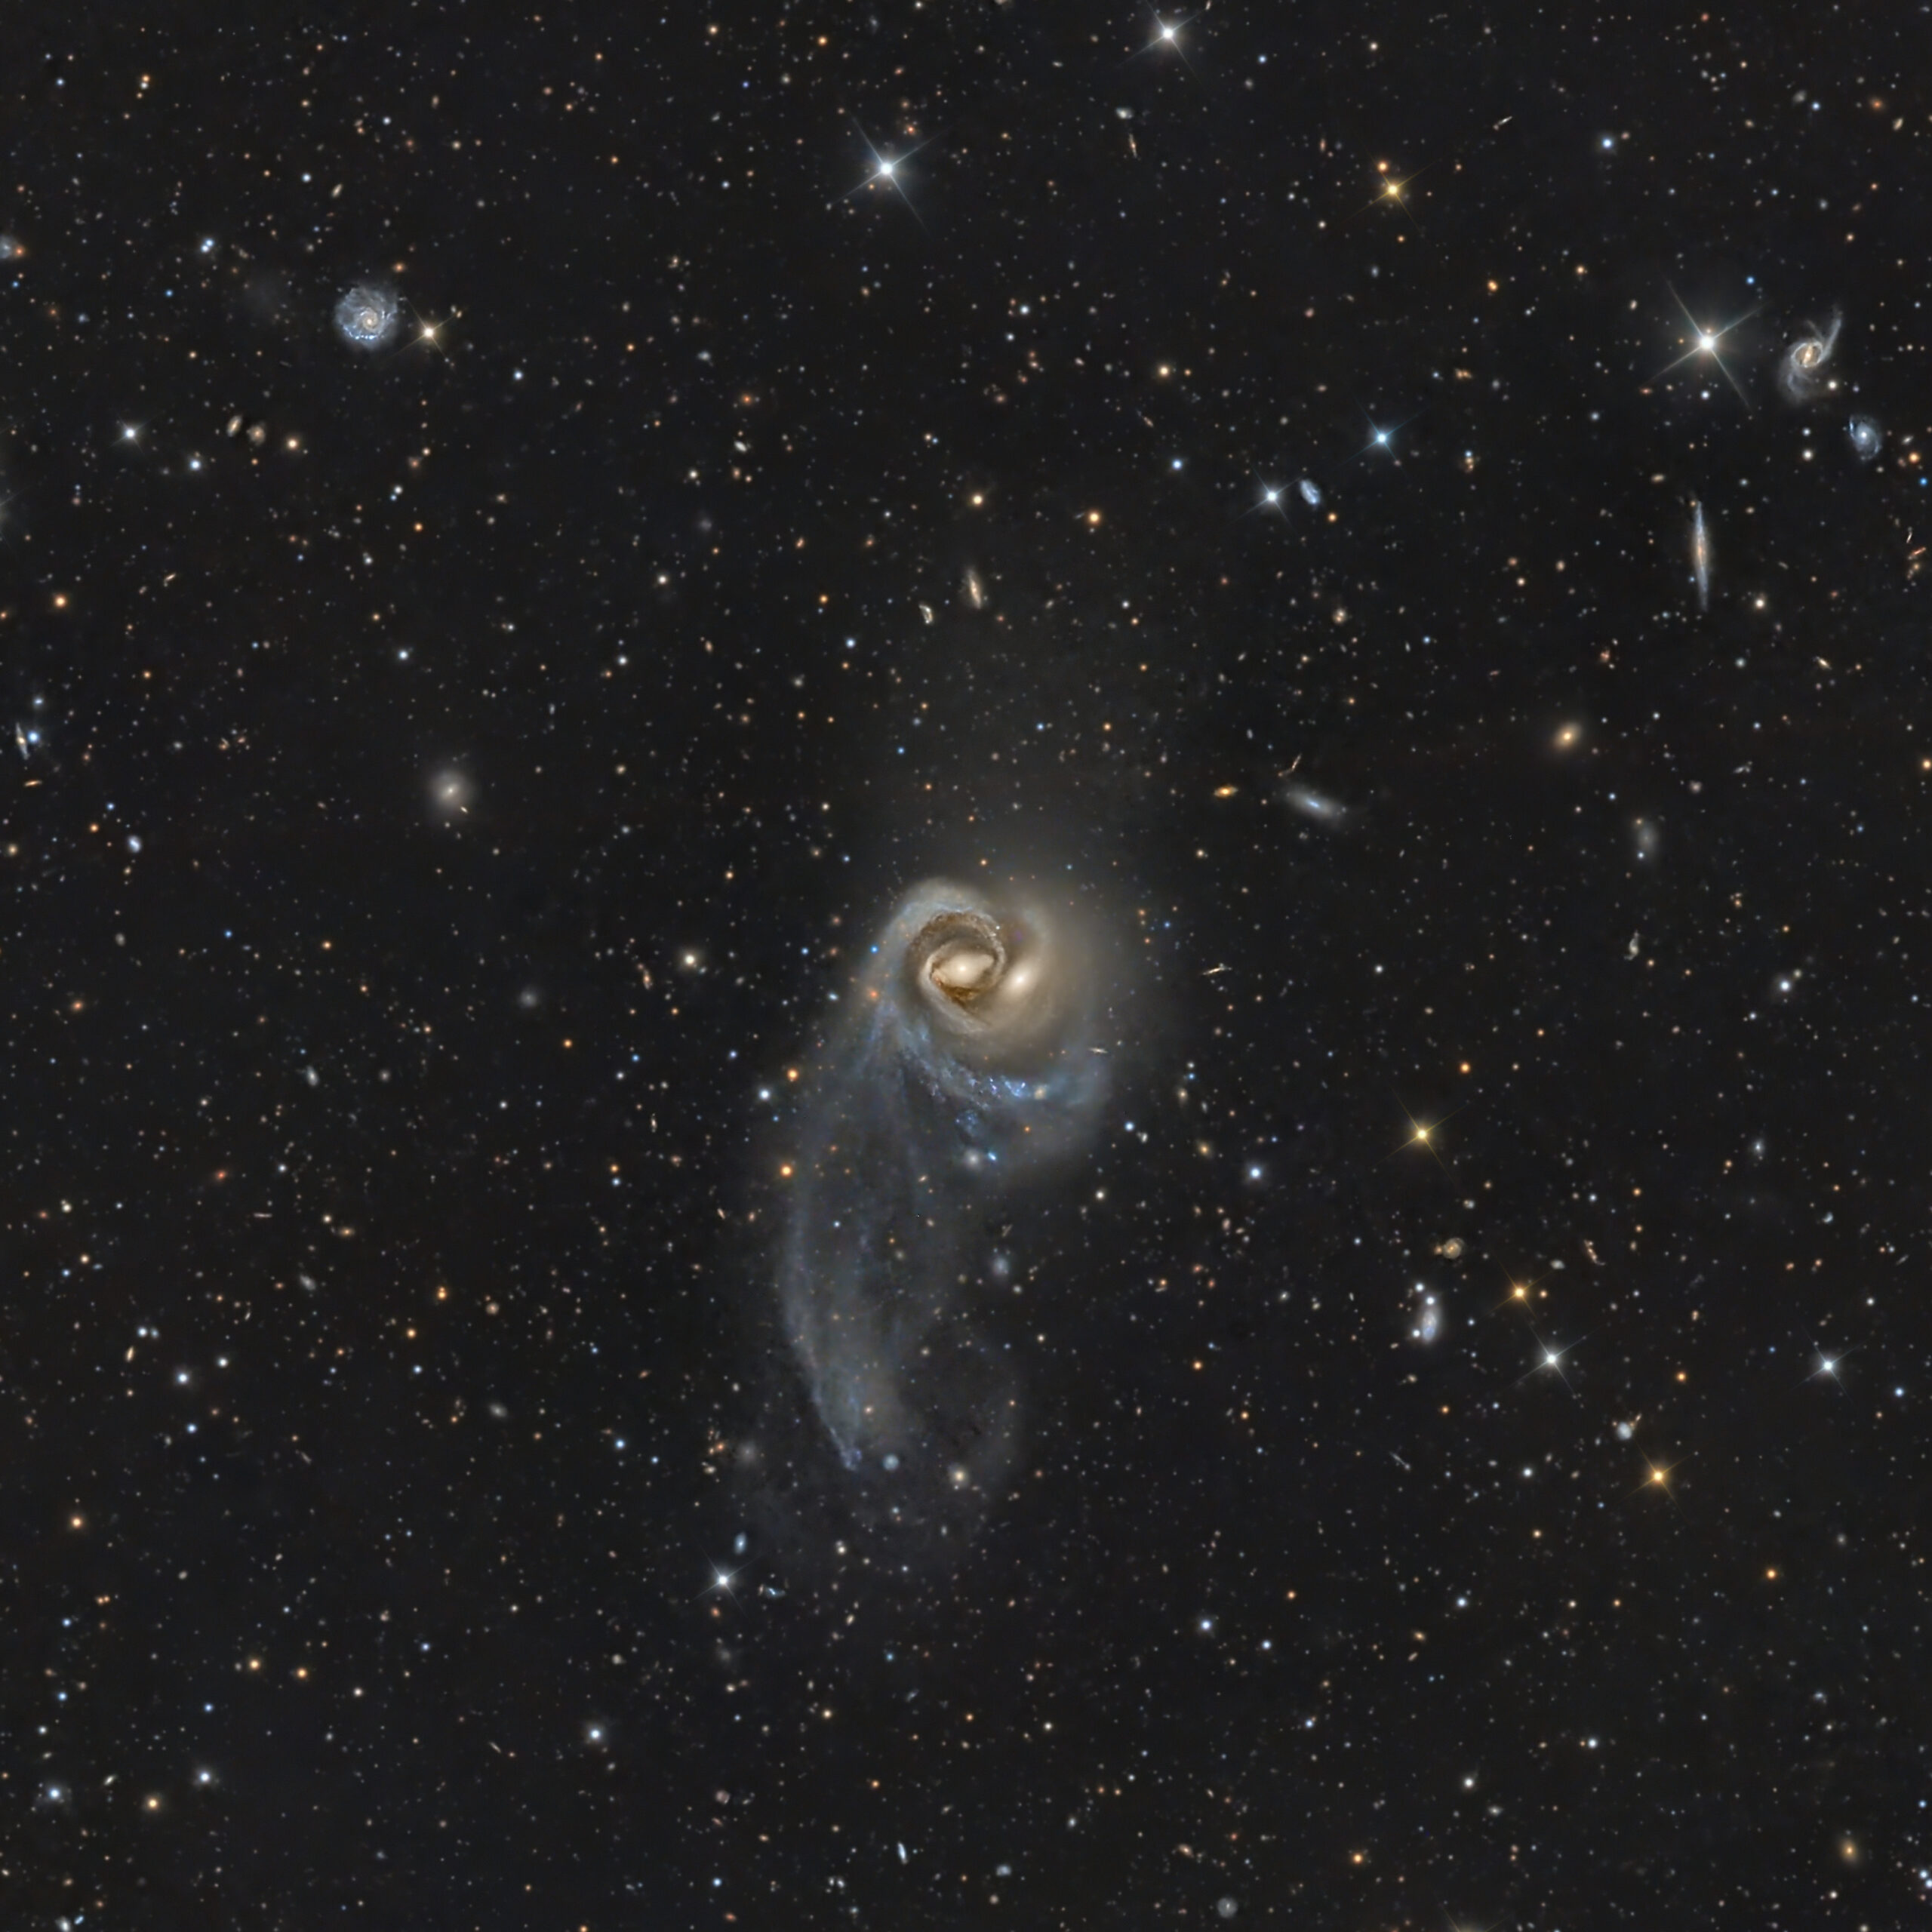 NGC 7285 and NGC 7284